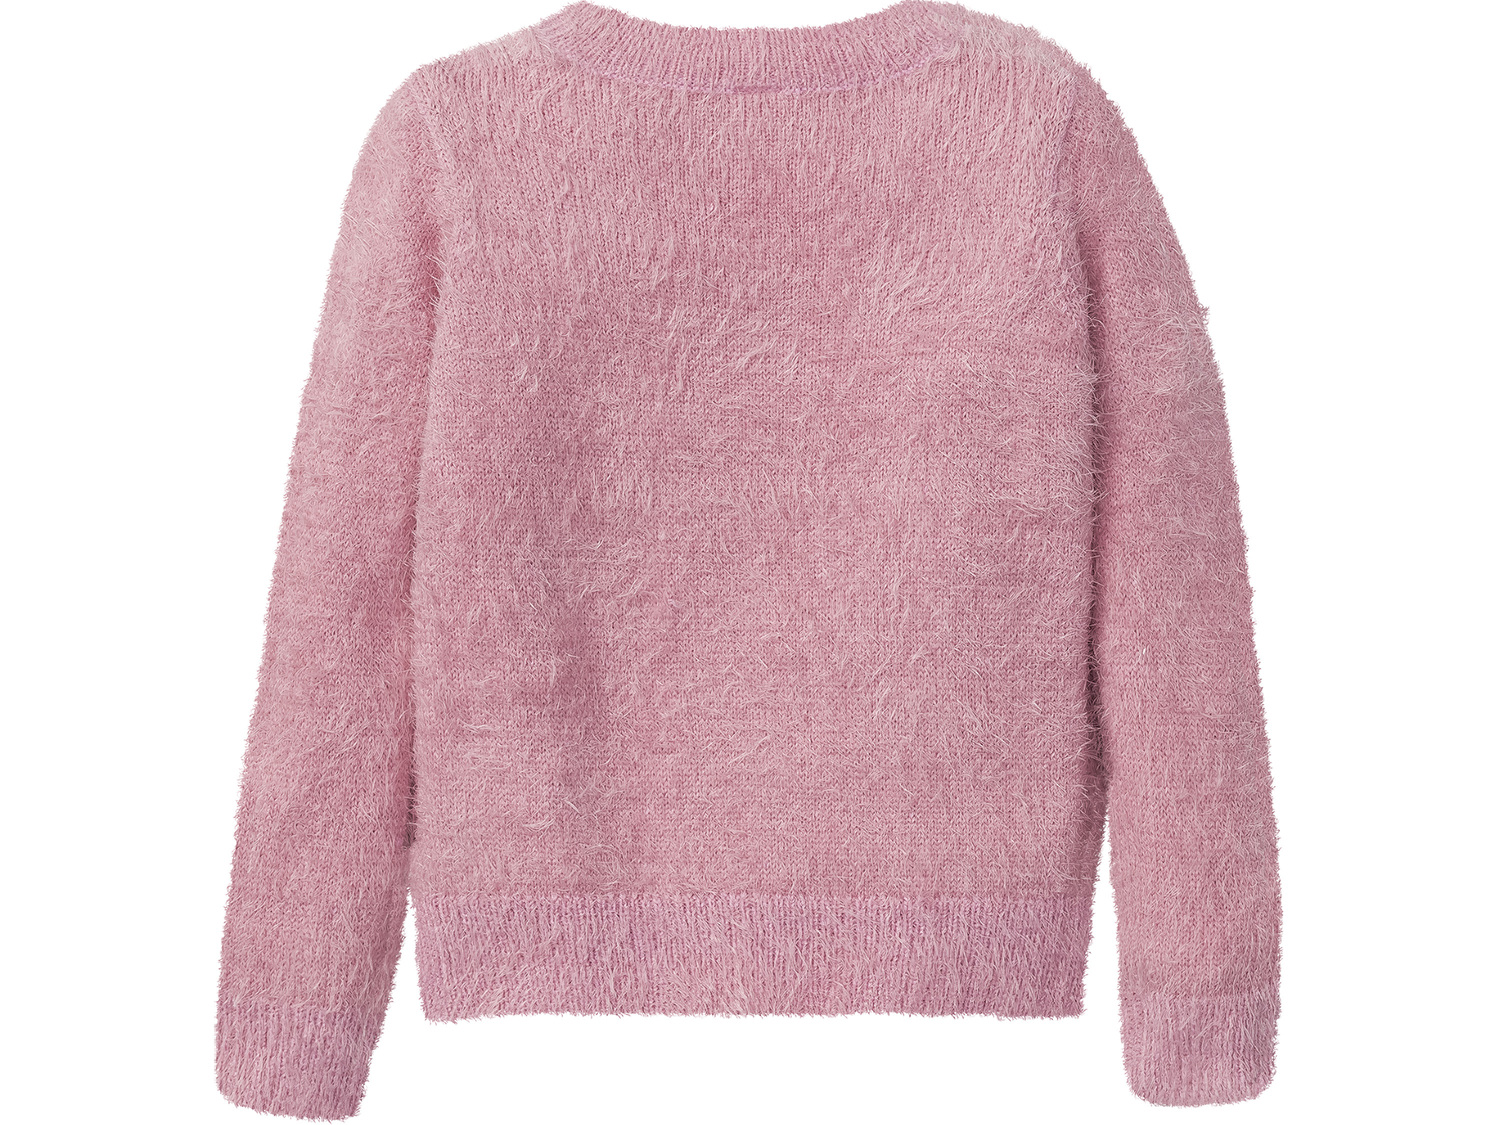 Sweter z szenili Pepperts, cena 29,99 &#8364; 
- wyjatkowo miękki i ciepły
- ...